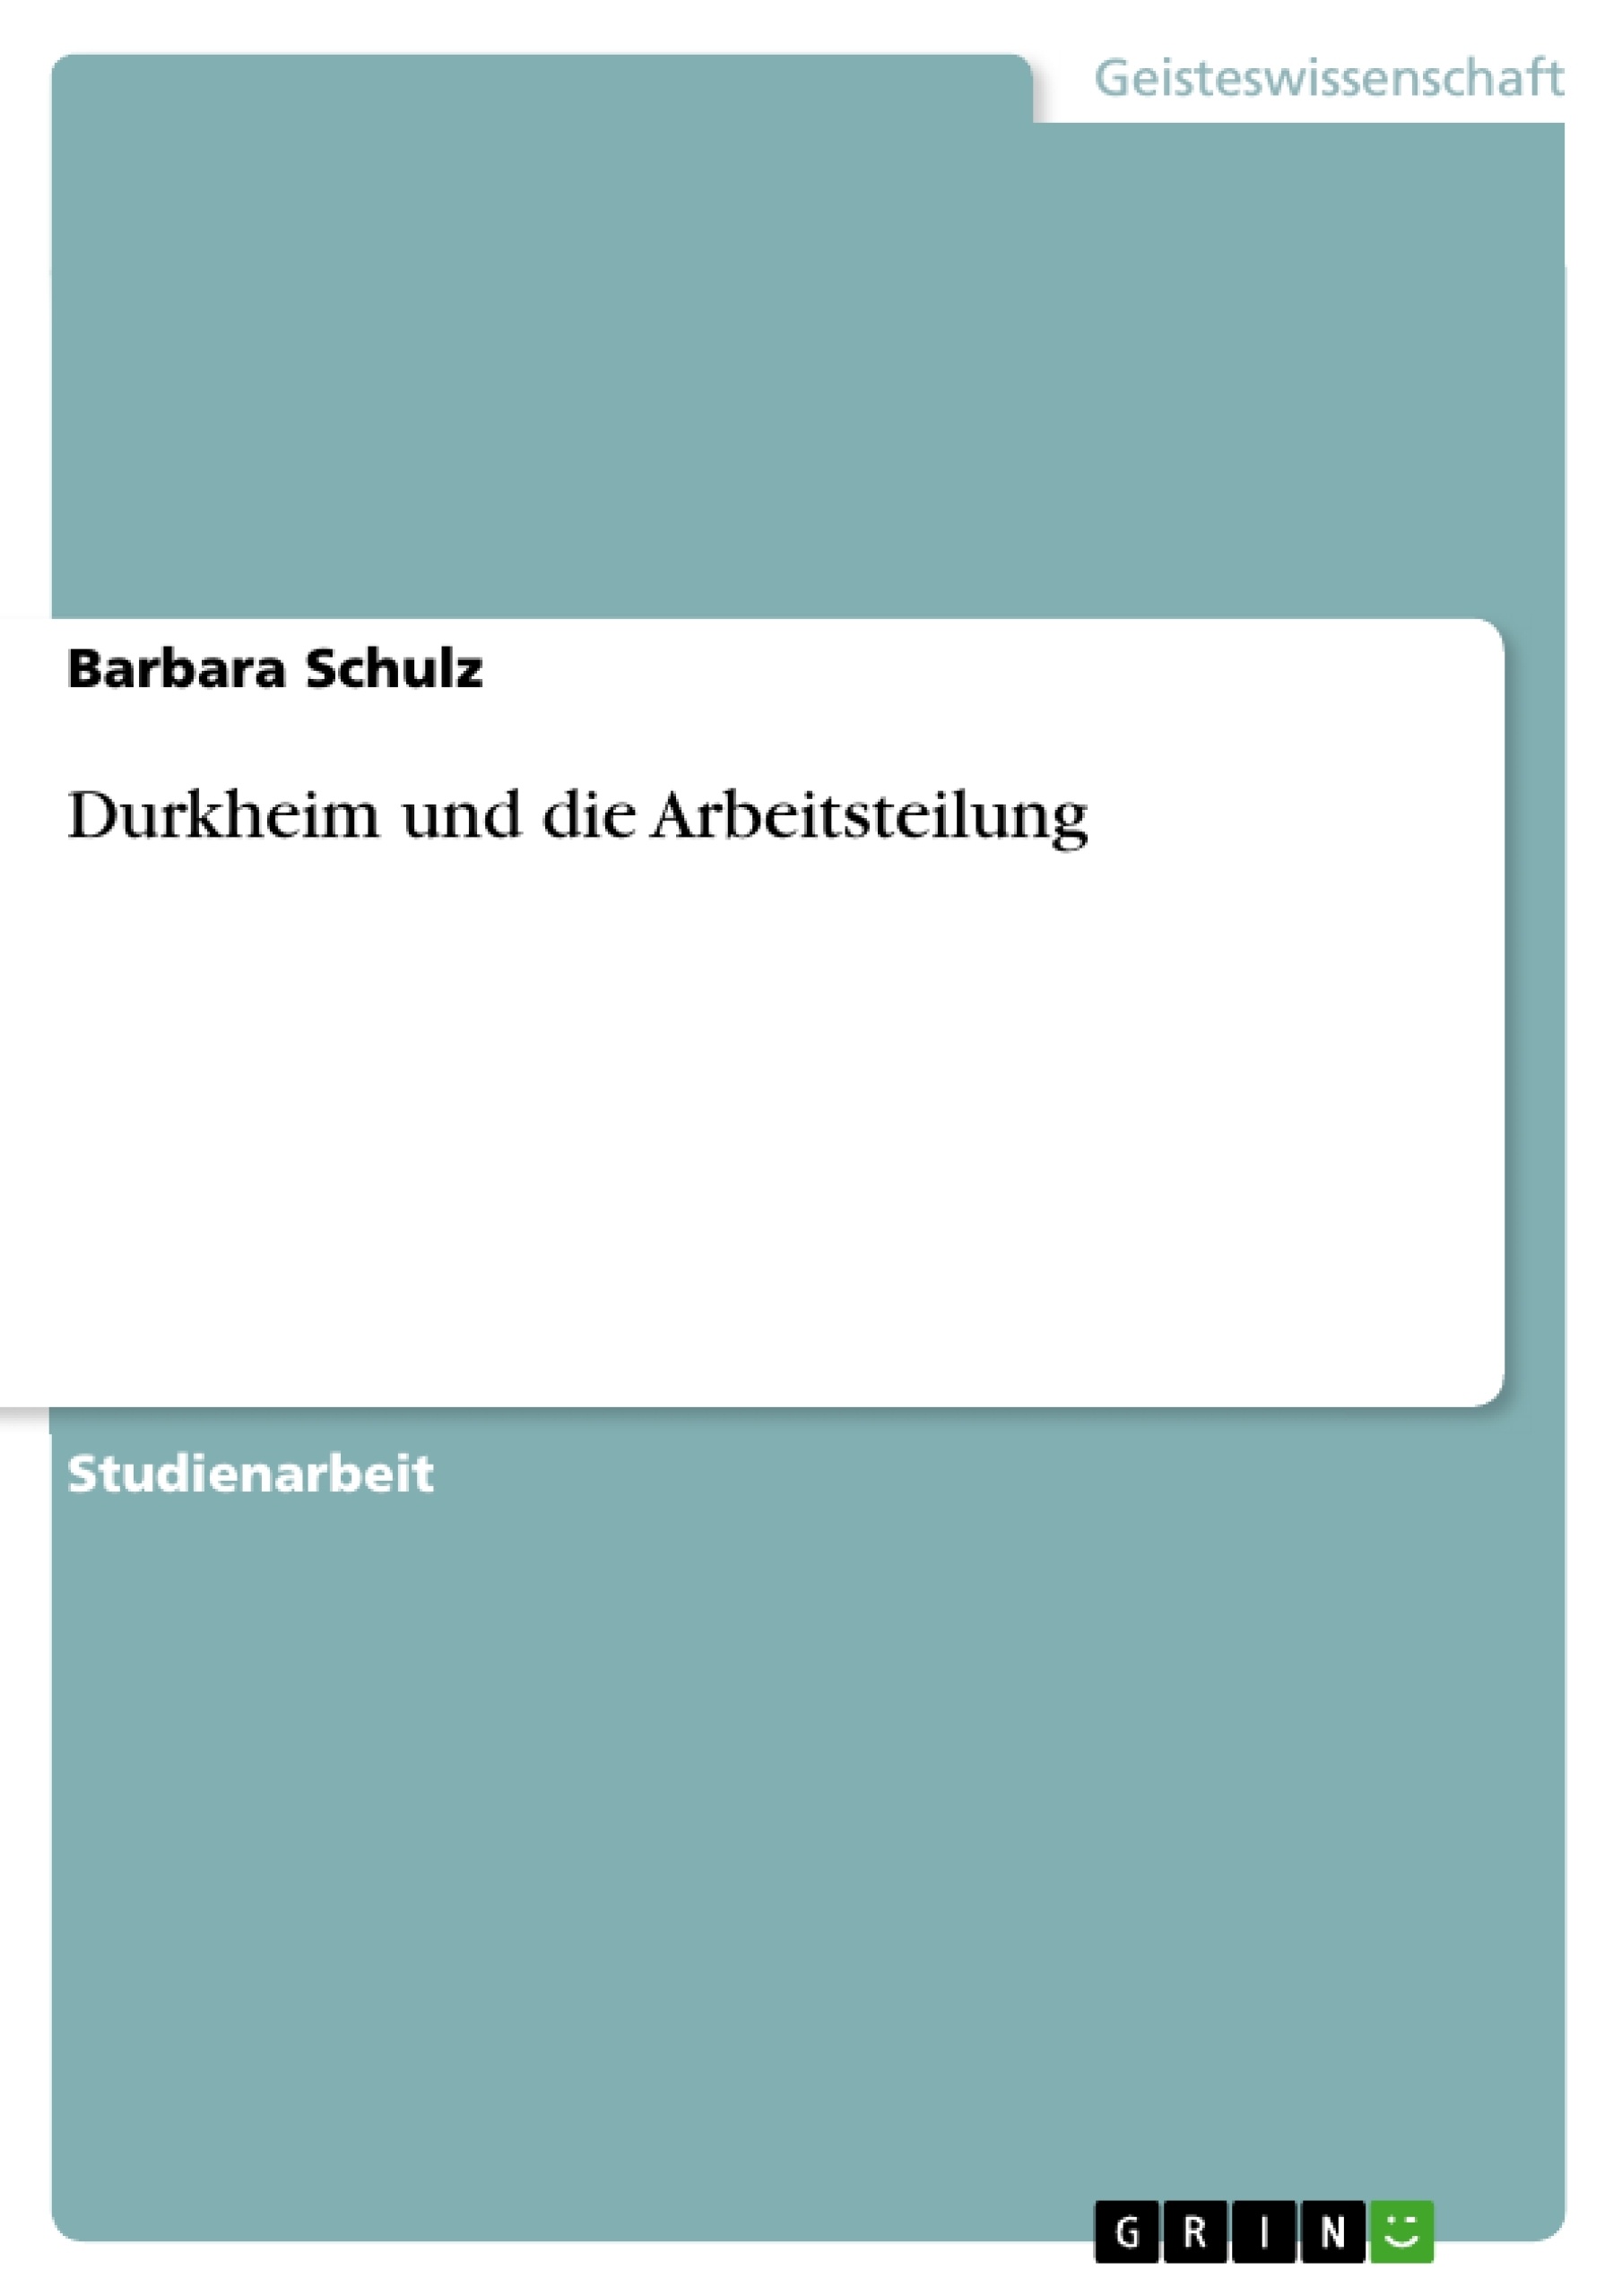 Título: Durkheim und die Arbeitsteilung